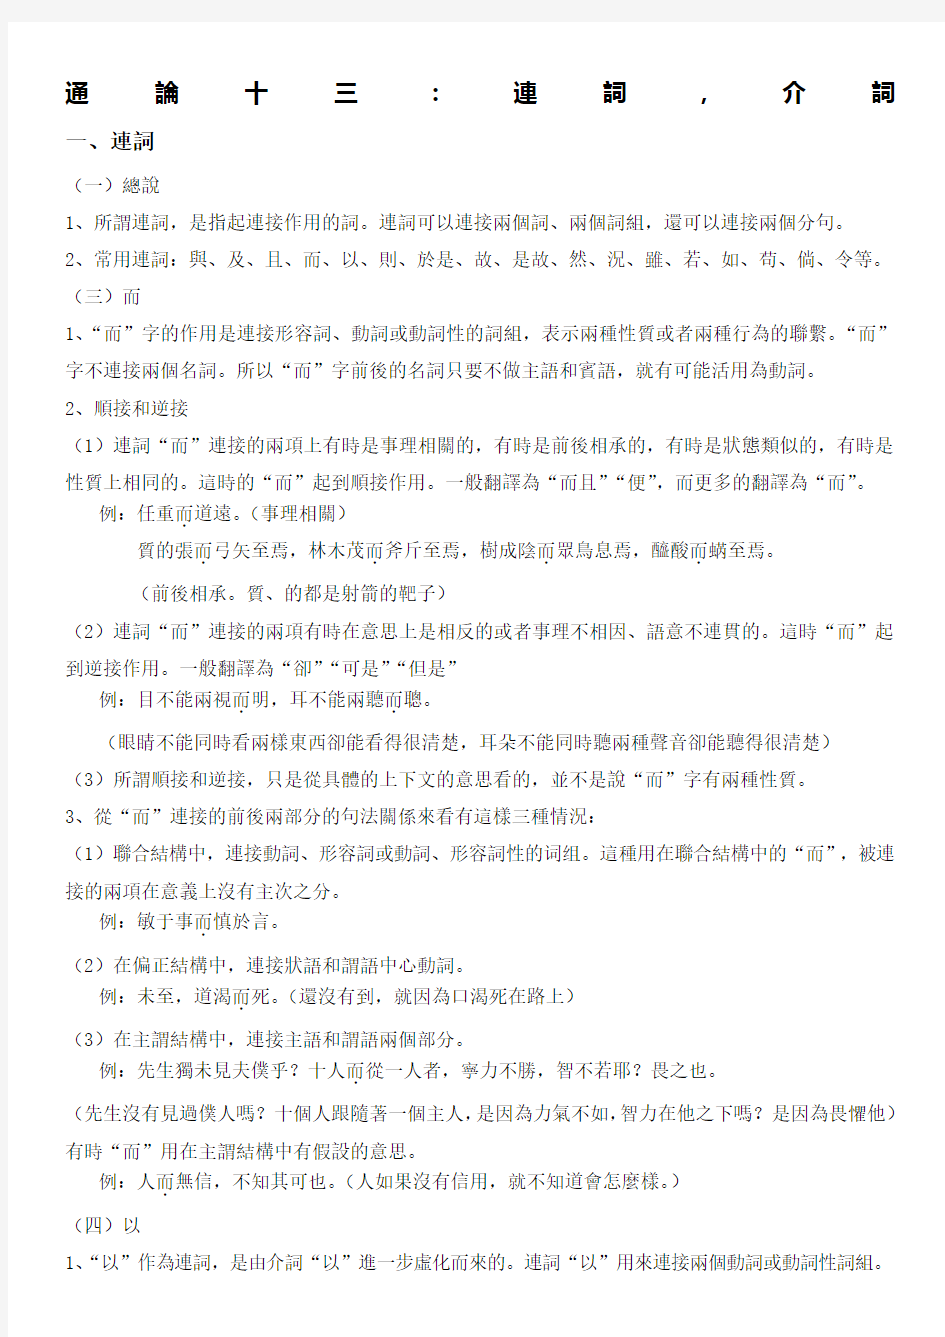 王力古代汉语第二册通论讲义